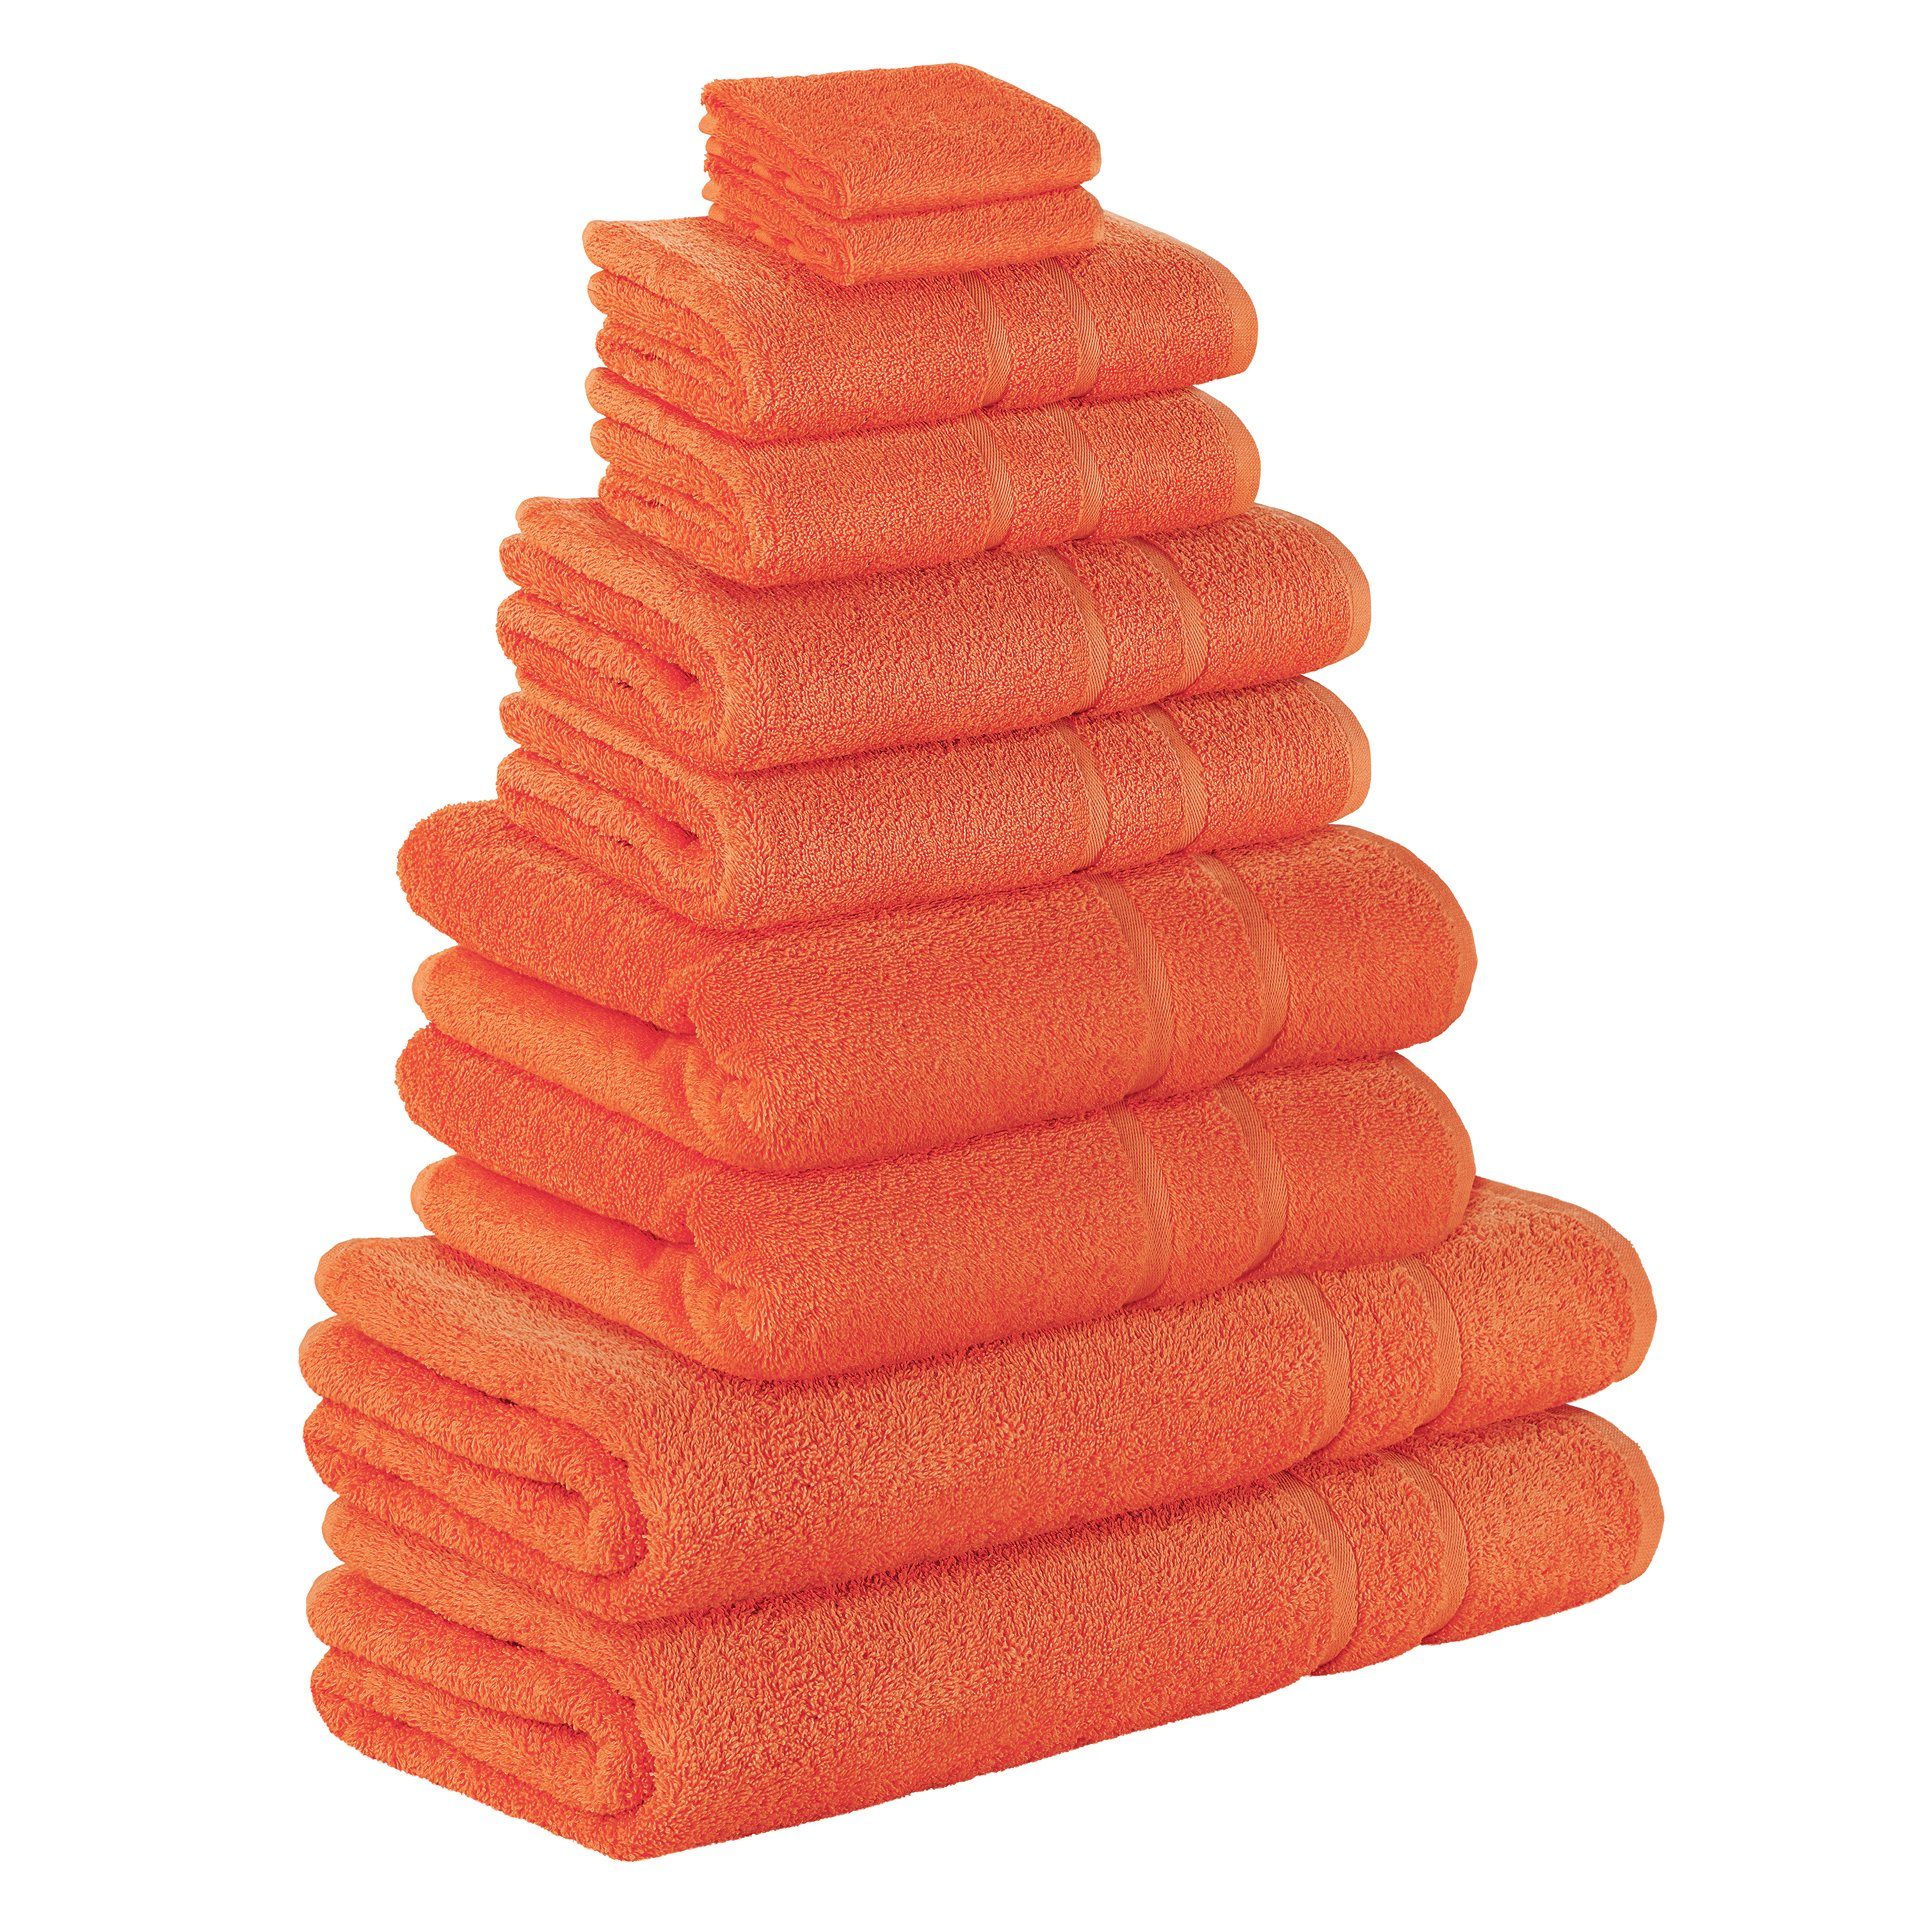 StickandShine Handtuch Set 2x Gästehandtuch 2x Handtücher 2x Duschtücher 2x Badetücher 2x Saunatücher als SET in verschiedenen Farben (10 Teilig) 100% Baumwolle 500 GSM Frottee 10er Handtuch Pack, (Spar-SET), 100% Baumwolle 500GSM Frottee Orange